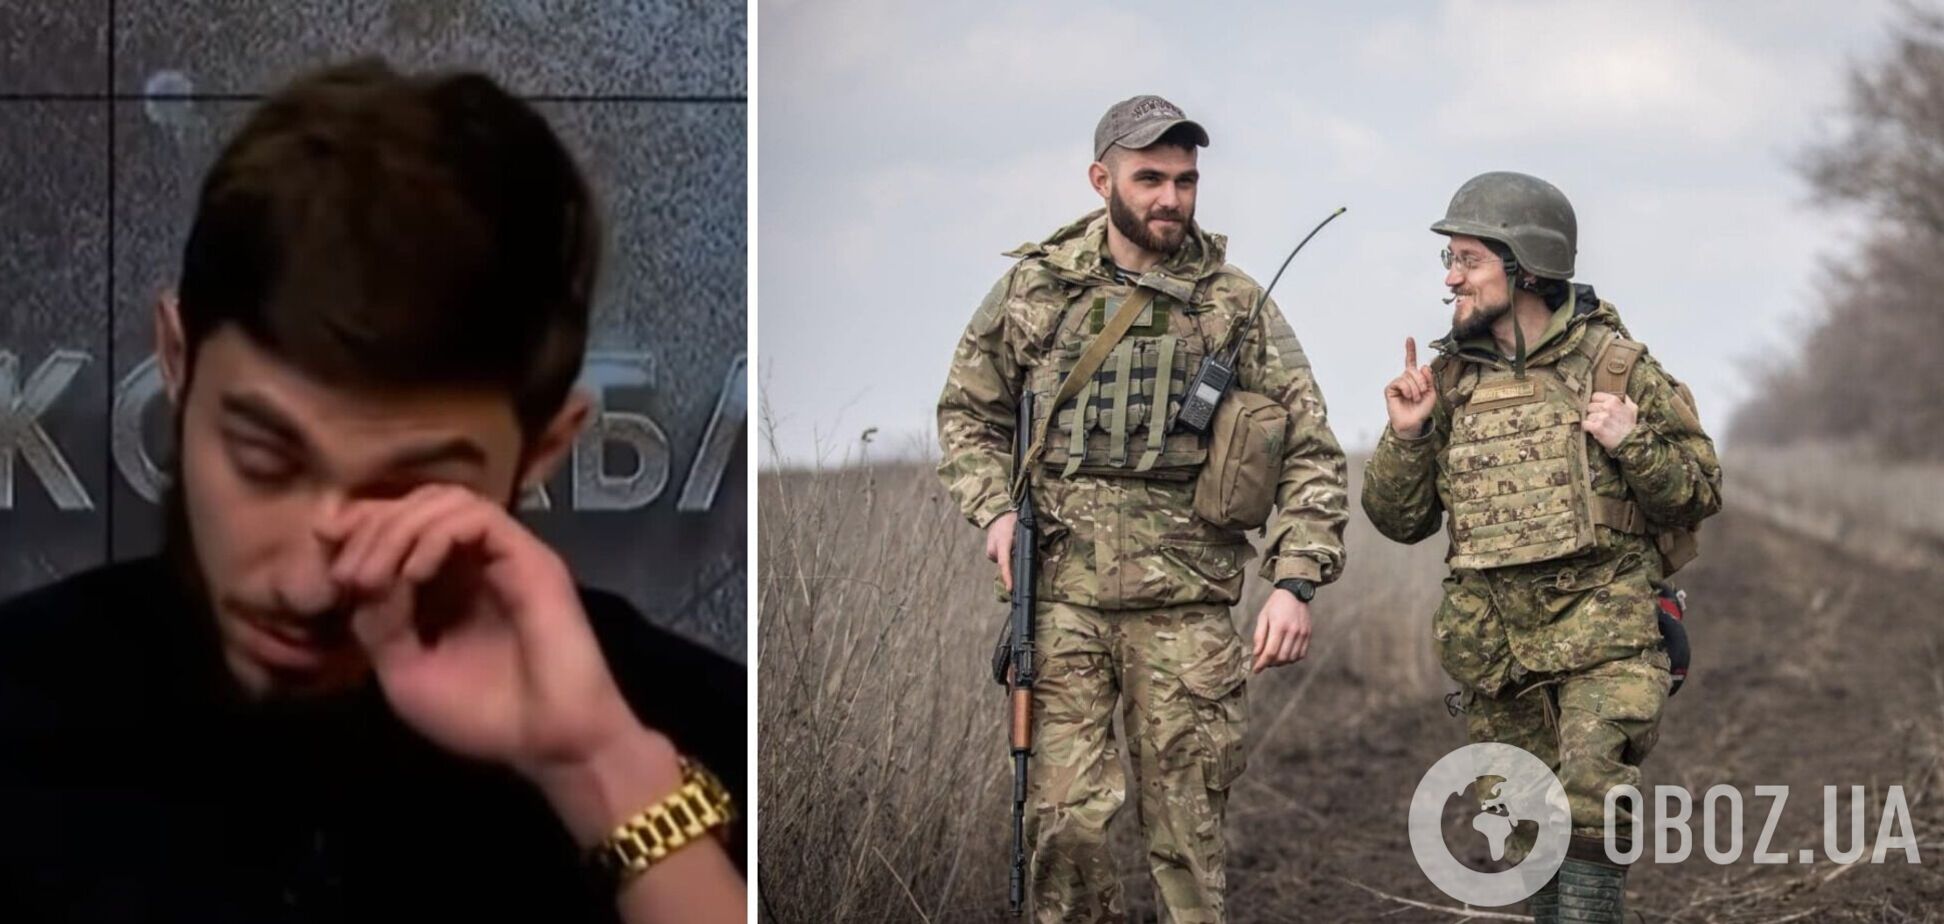 Украинский ведущий расплакался в прямом эфире, сообщая о гибели друга-военного. Видео